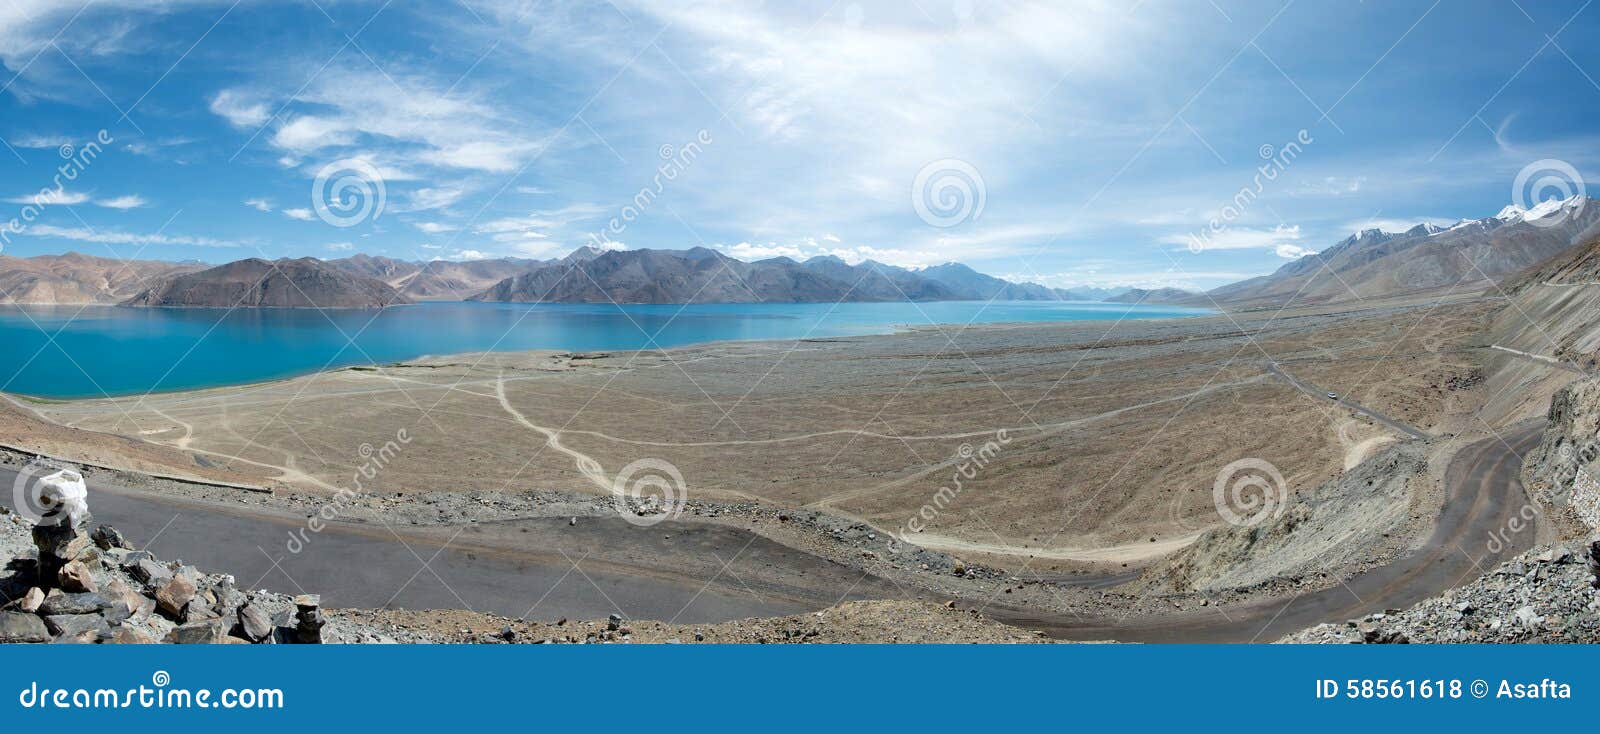 pangong lake in ladakh, india